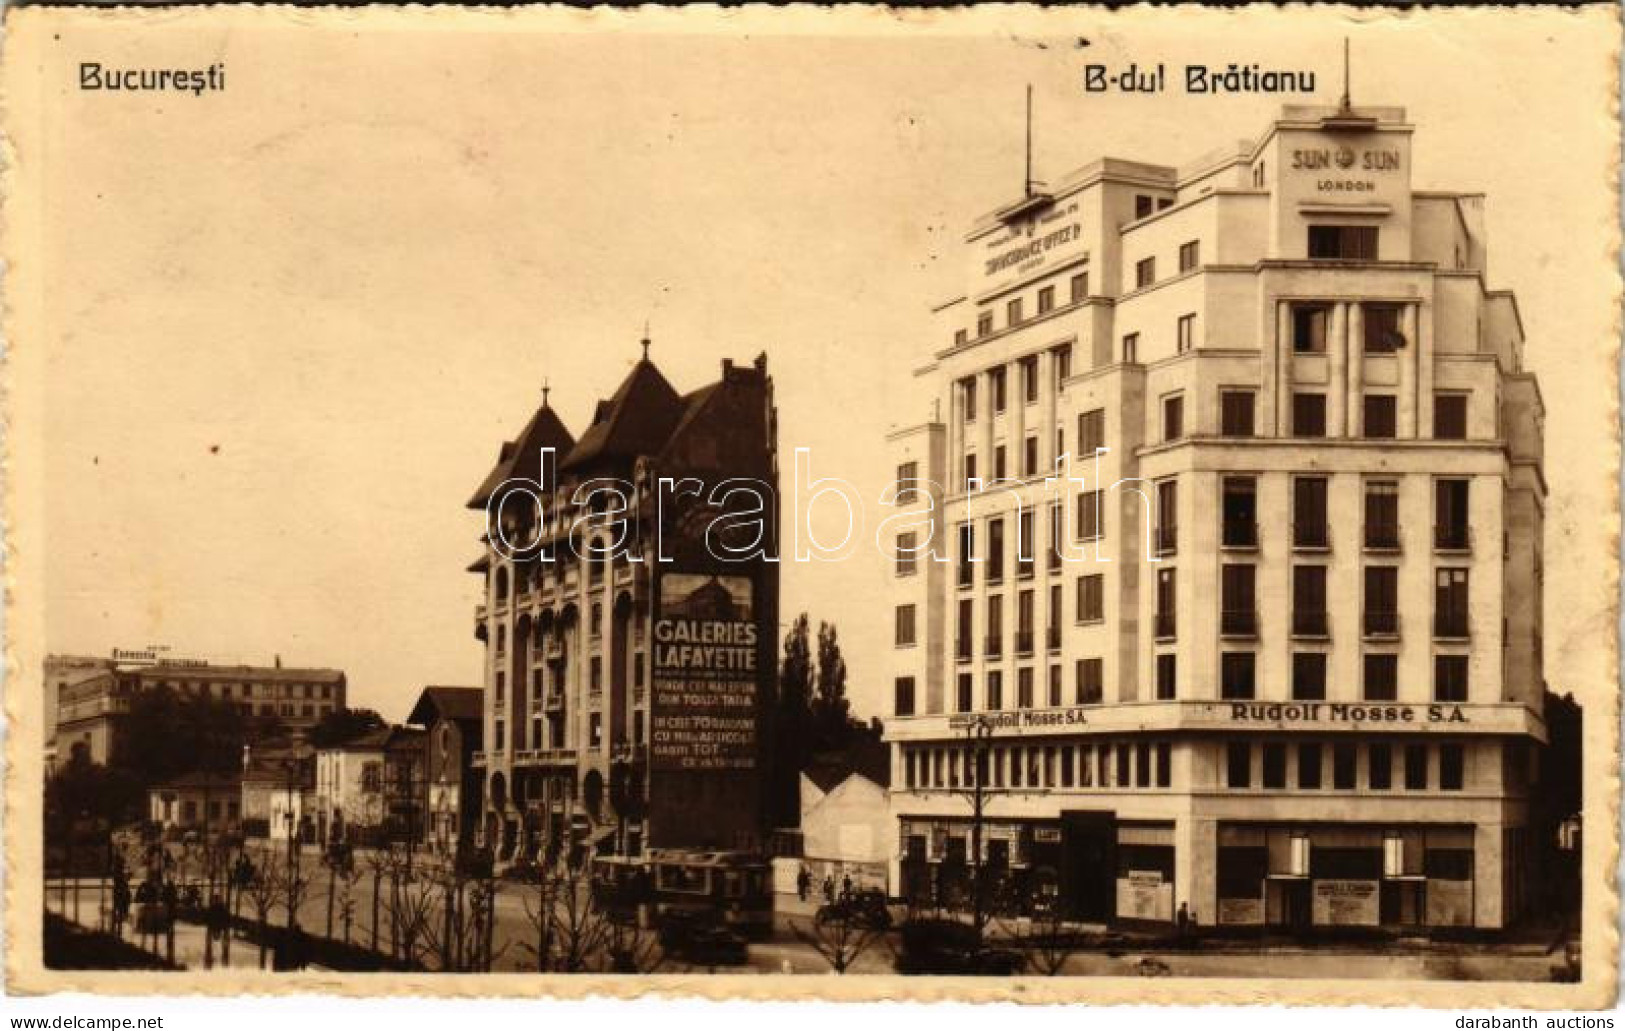 T2/T3 1933 Bucharest, Bukarest, Bucuresti, Bucuresci; B-dul Bratianu, Rudolf Mosse S.A., Sun Insurance Office Ltd. Londo - Unclassified